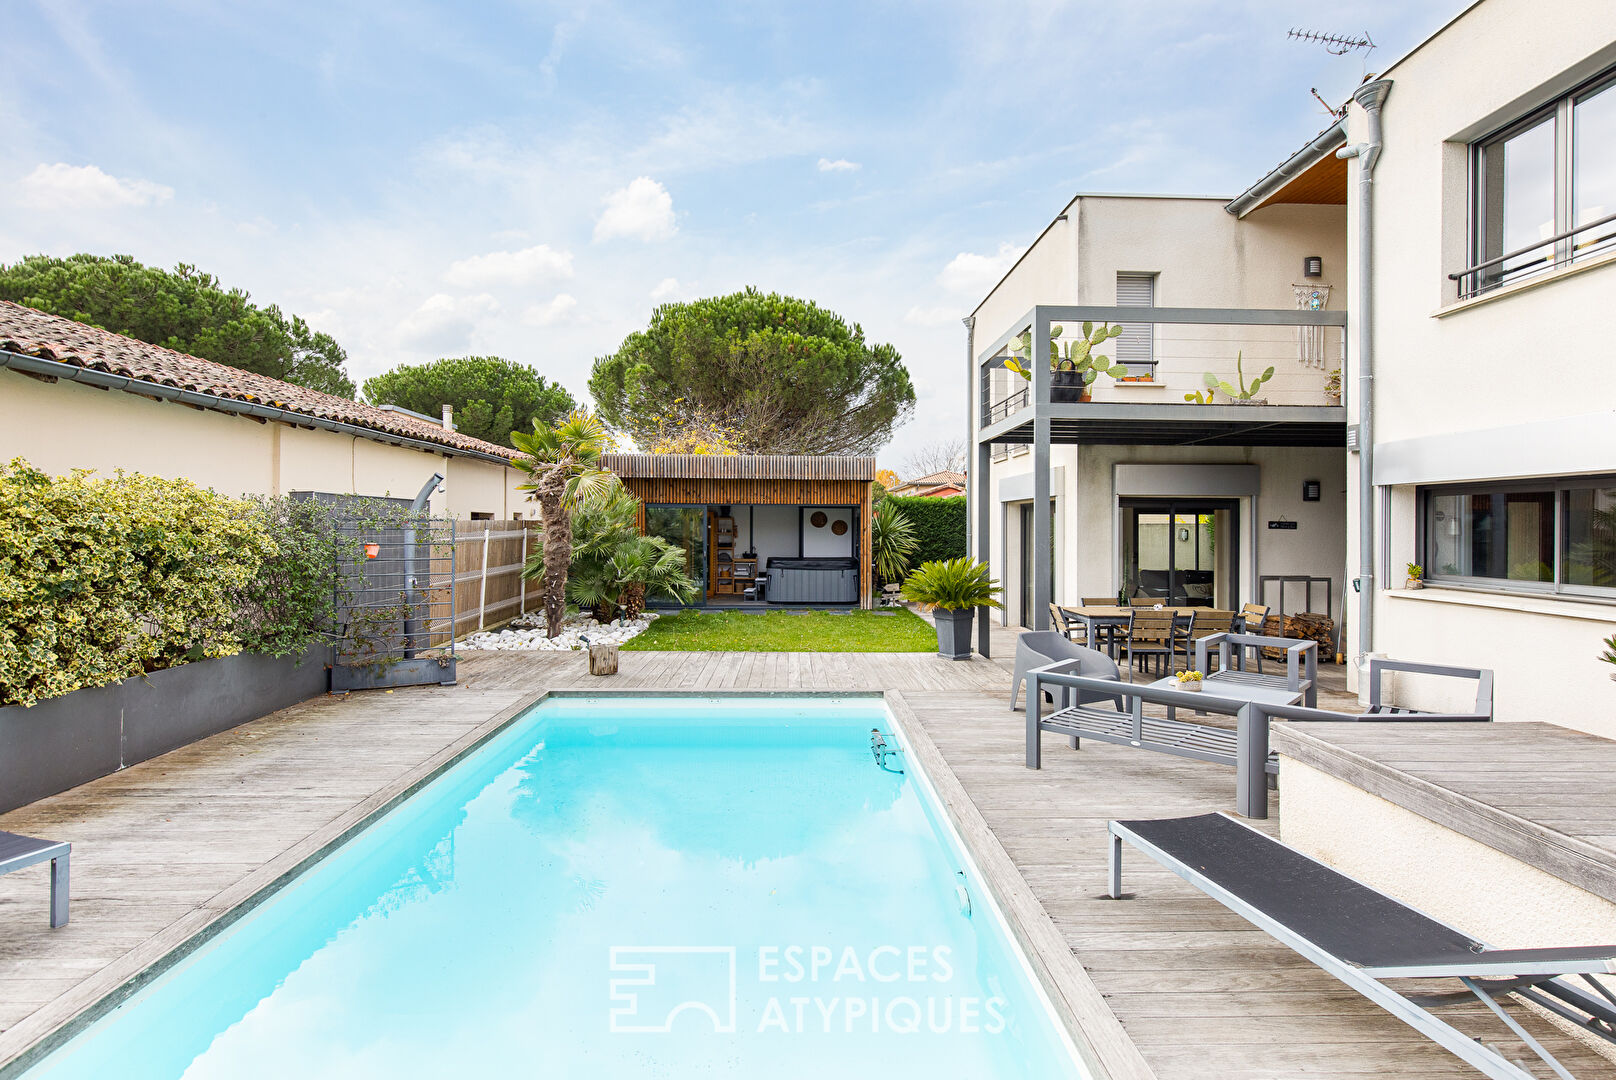 Maison d’architecte avec spa et piscine à Toulouse